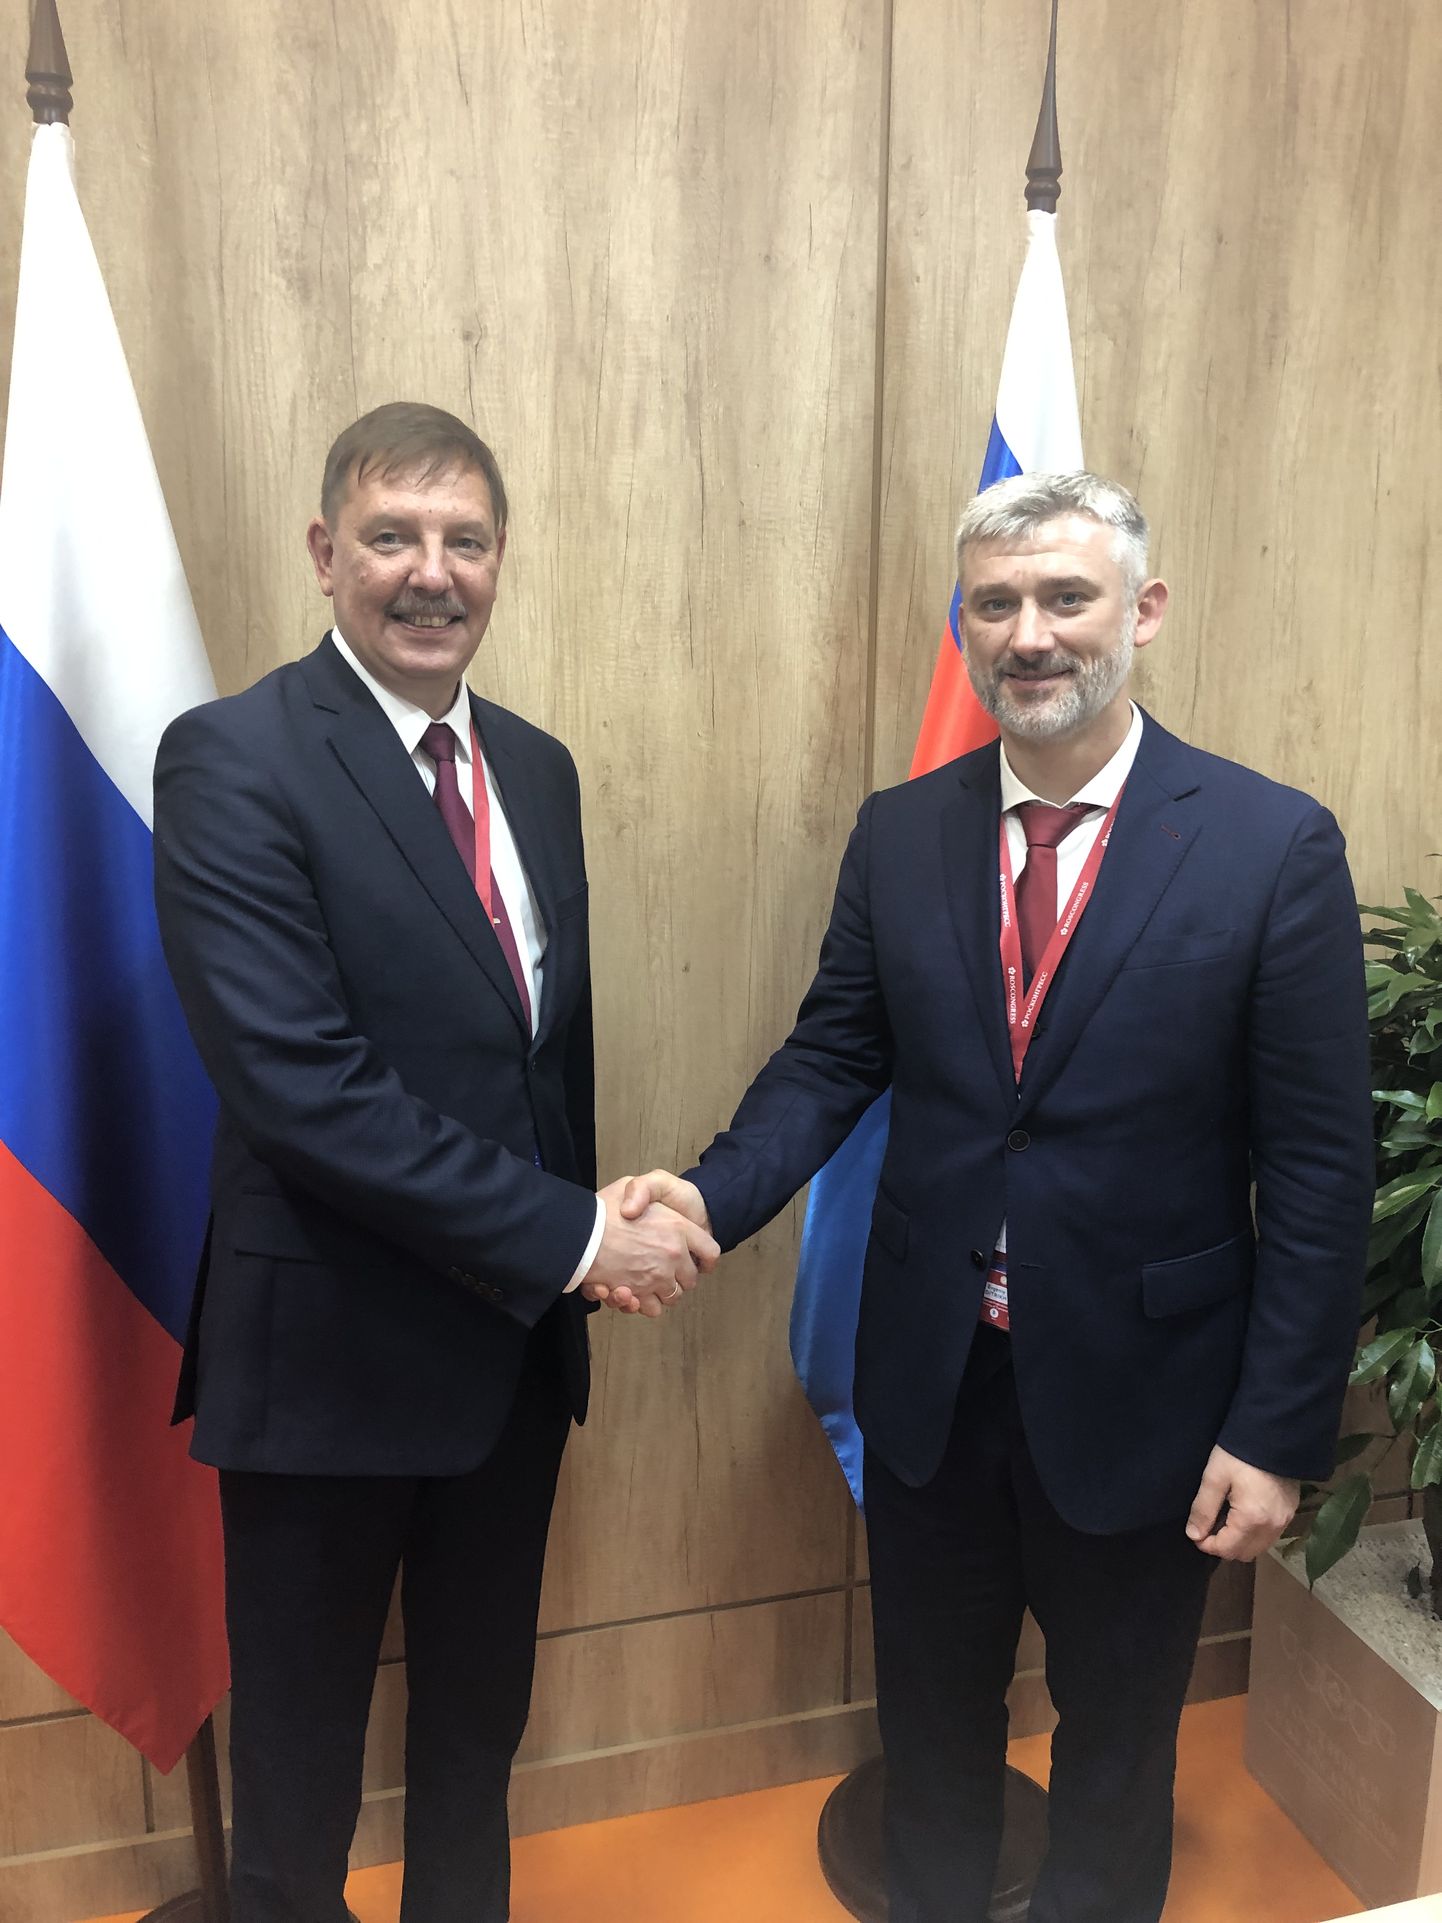 Majandus- ja taristuminister Taavi Aas kohtus Peterburis Vene transpordiministri Jevgeni Ditrihhiga.